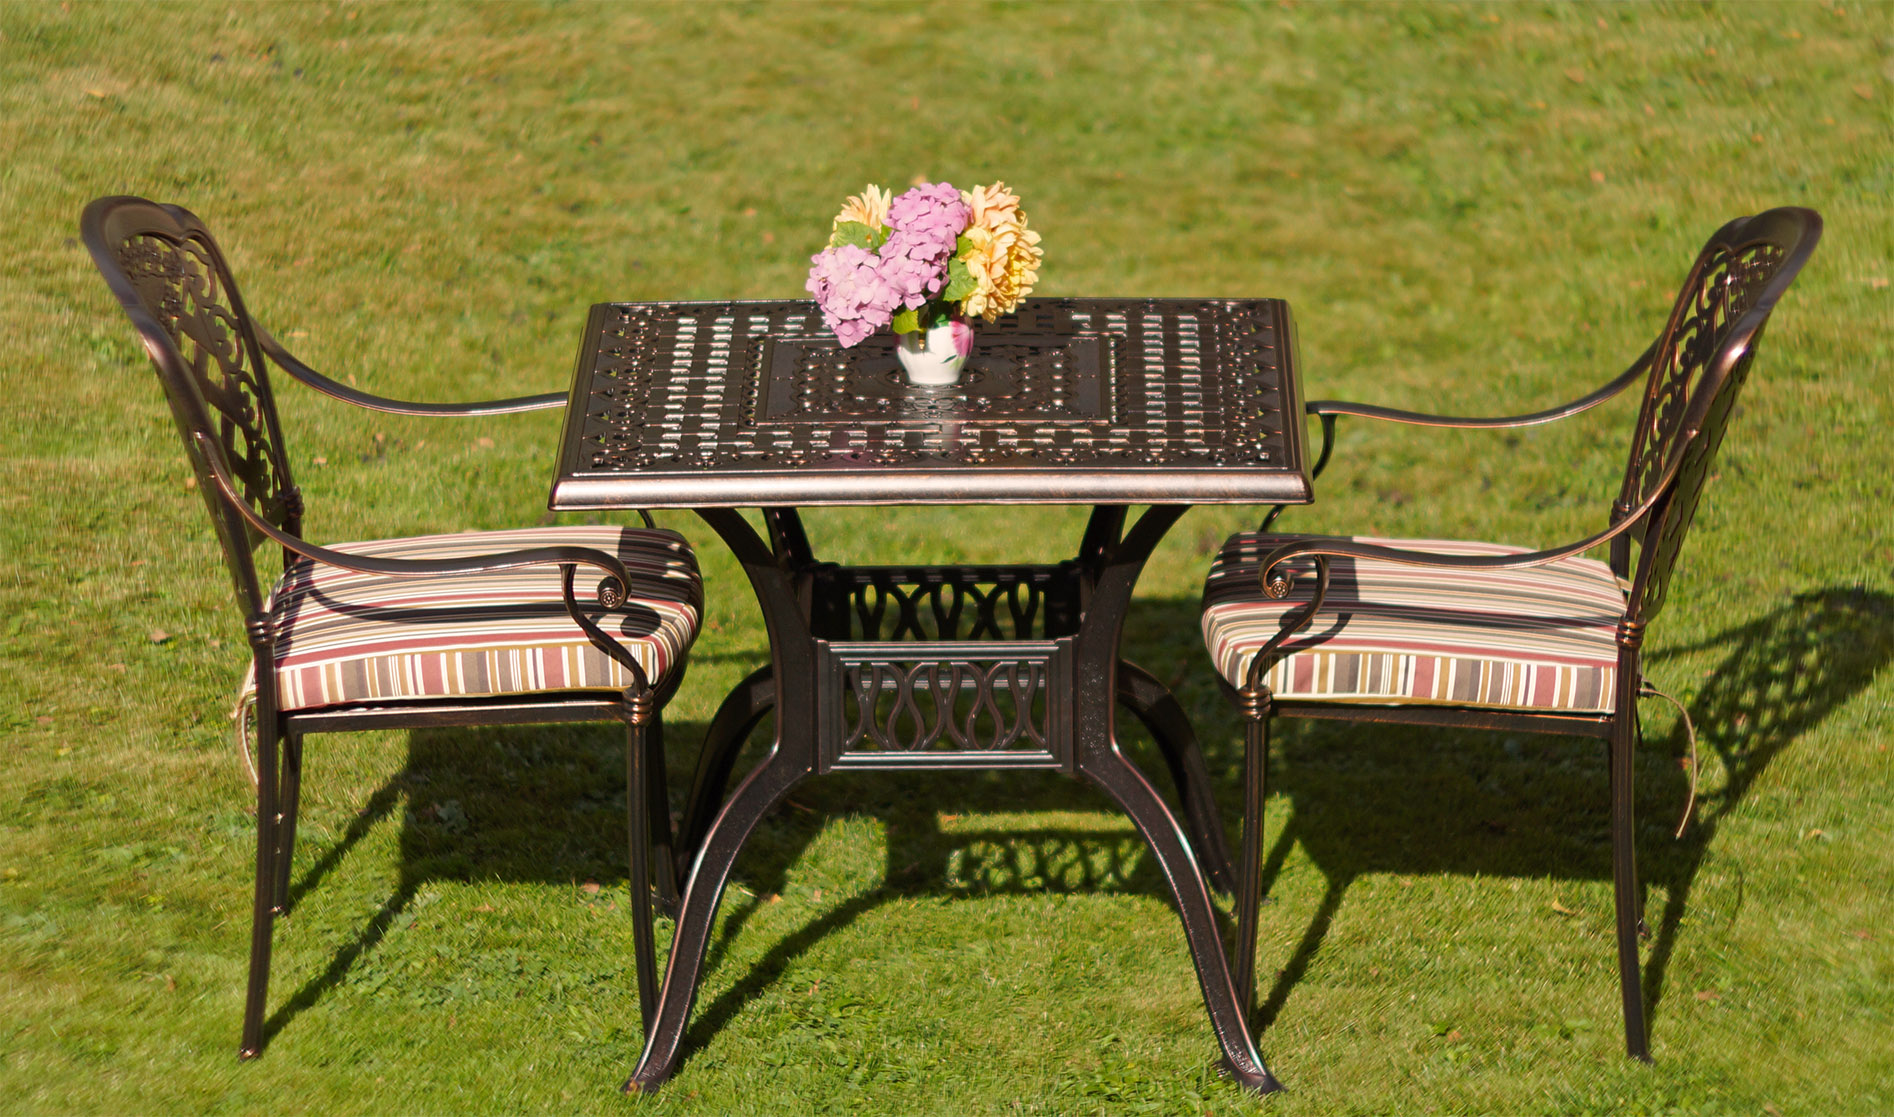 Металлическая мебель для летних кафе бистро, ажурный стол и стулья для сада, мебель из металла на дачу в беседку и на крыльцо, чайных комплект кованой садовой мебелина 